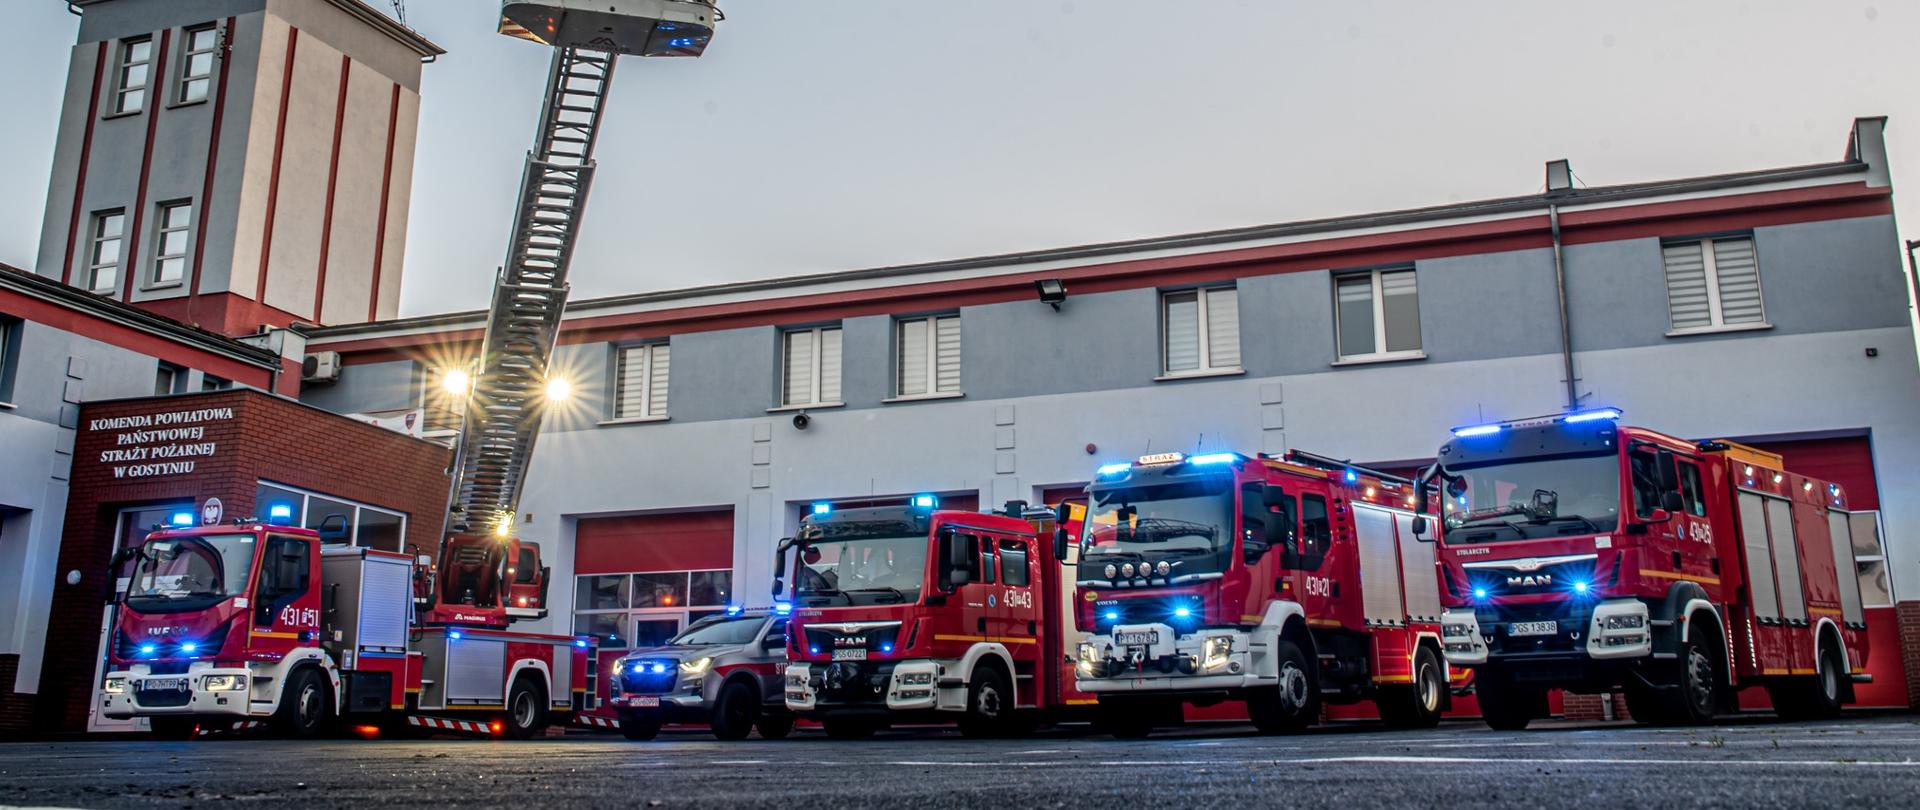  5 samochodów strażackich stoi przed budynkiem Komendy Powiatowej PSP w Gostyniu (GBA, GCBA, GBA-RT, SD oraz SLRR). Samochody mają włączone sygnały błyskowe. Kosz drabiny mechanicznej wyciągnięty jest w górę.